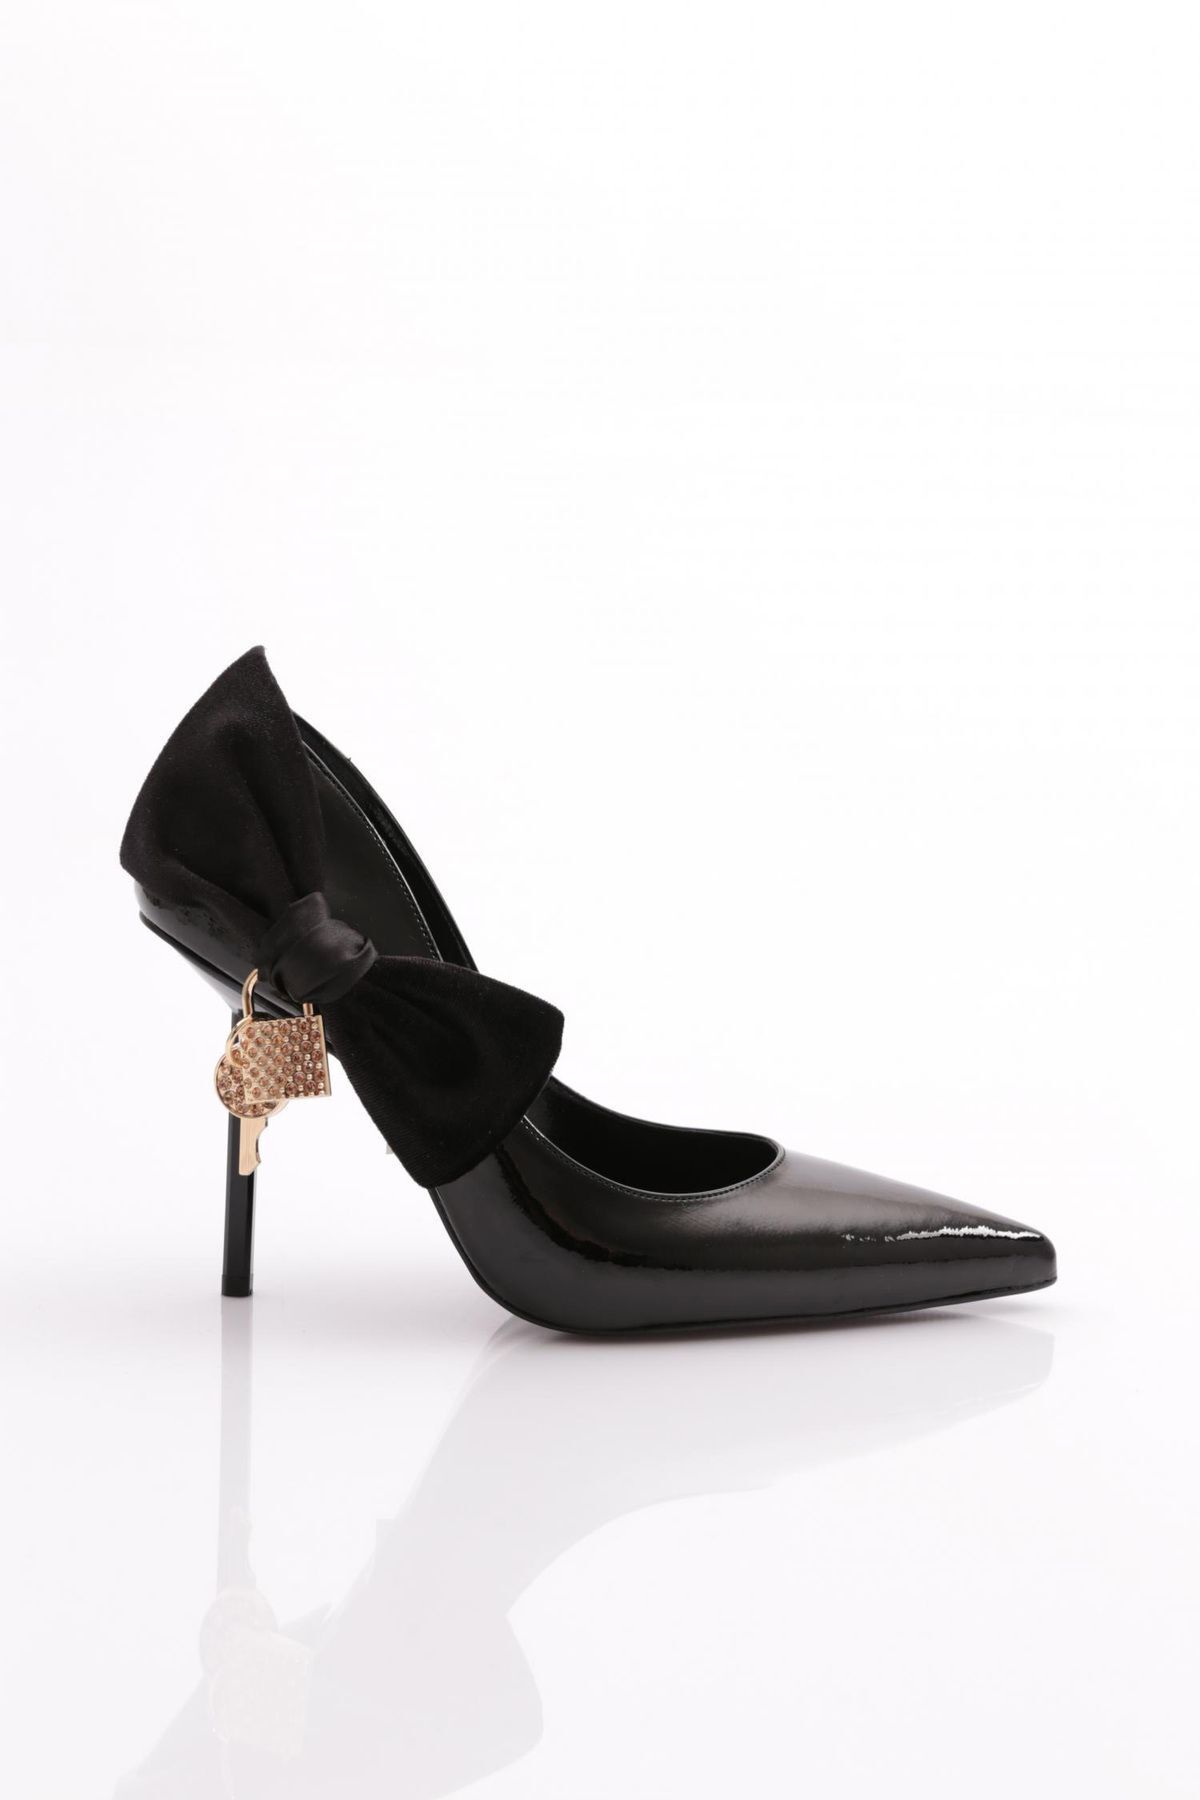 Dgn 4537 Kadın Topuklu Ayakkabı Siyah Kırışık Rugan